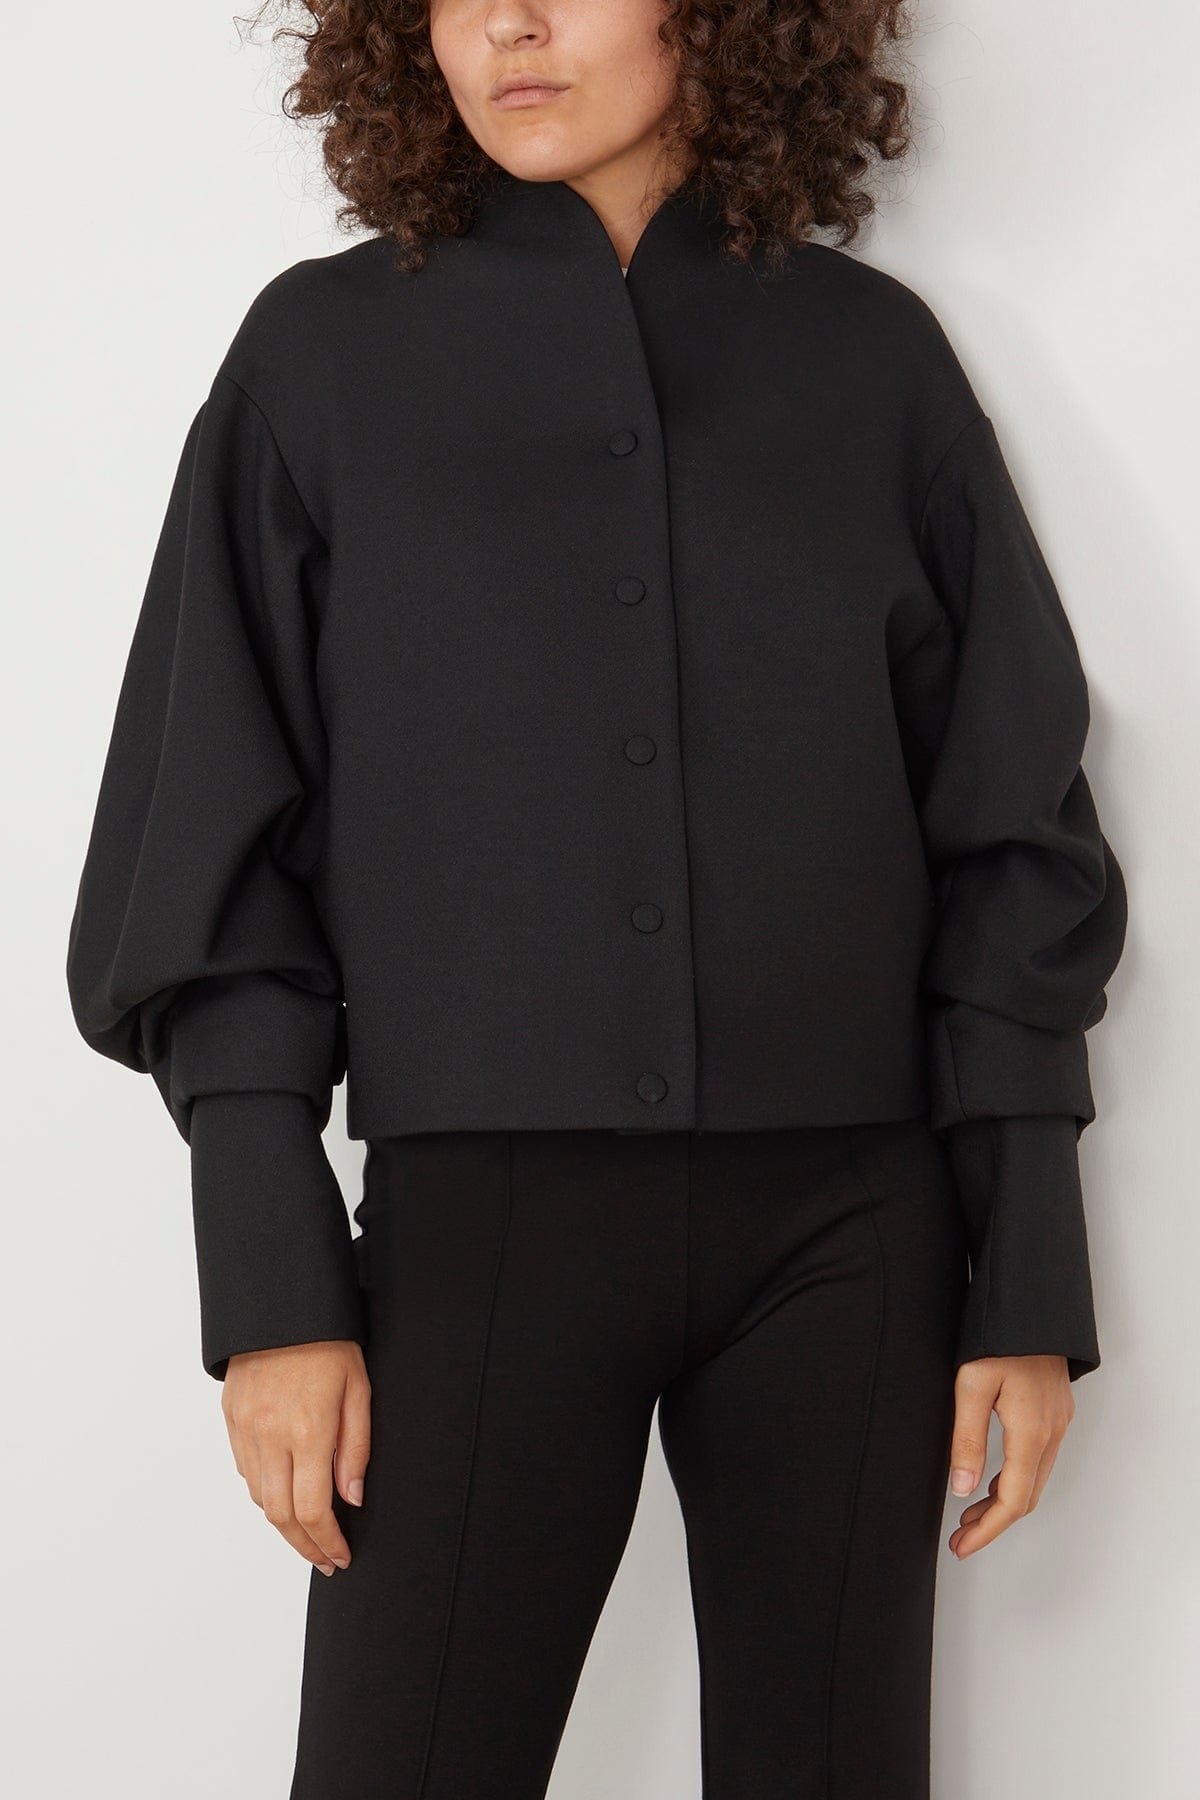 Wrinkled Sleeve Jacket in Black - 3